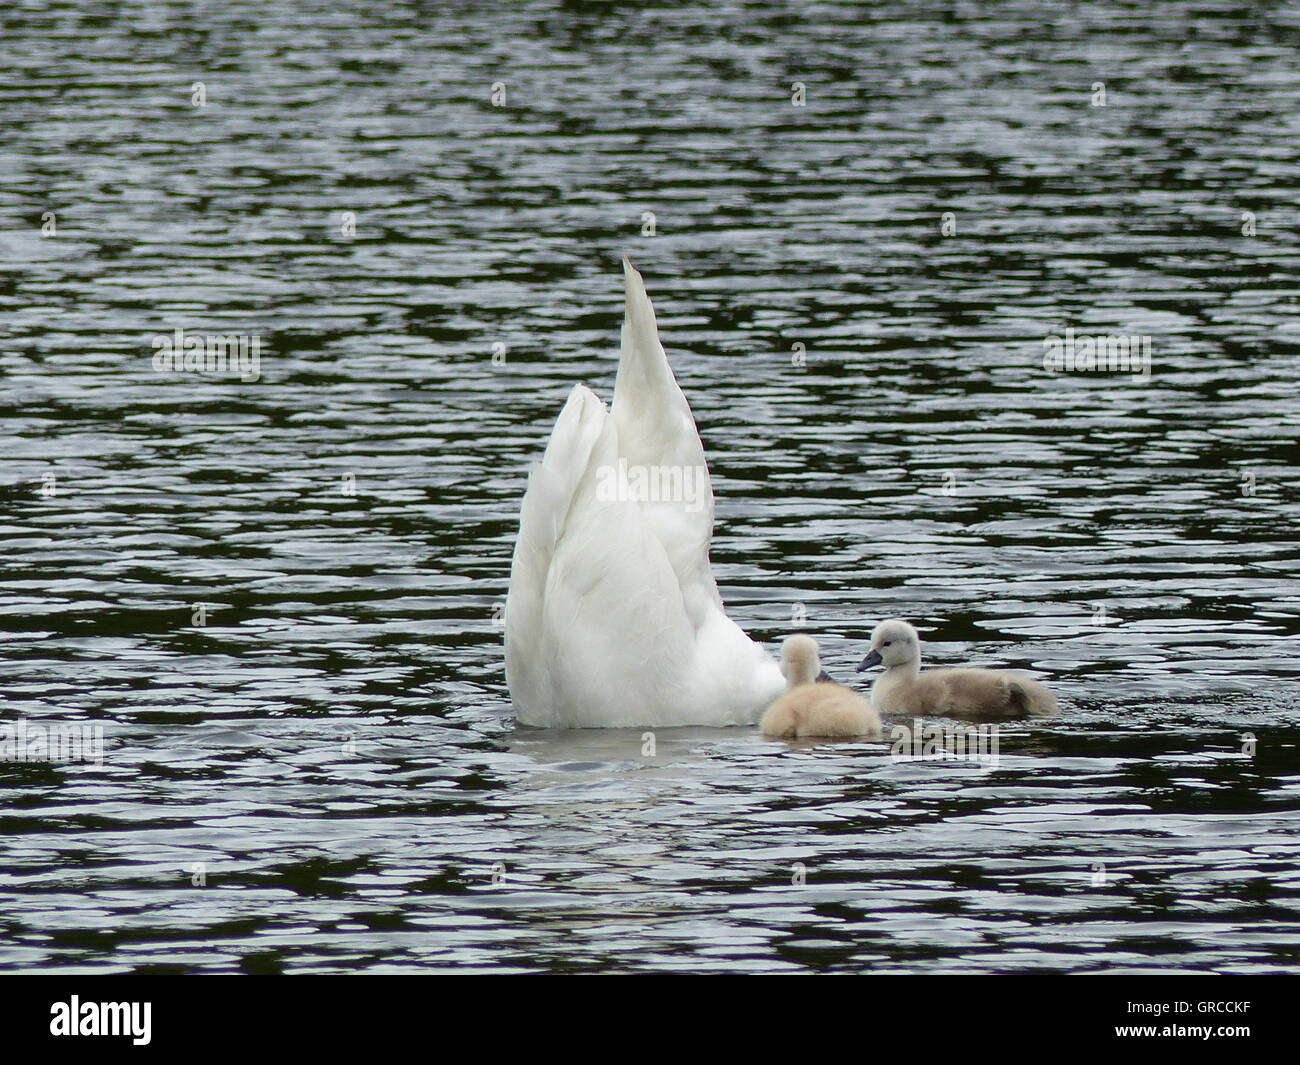 La tête dans l'eau, maman Swan est à la recherche de la nourriture pour ses deux poussins d'une semaine Banque D'Images